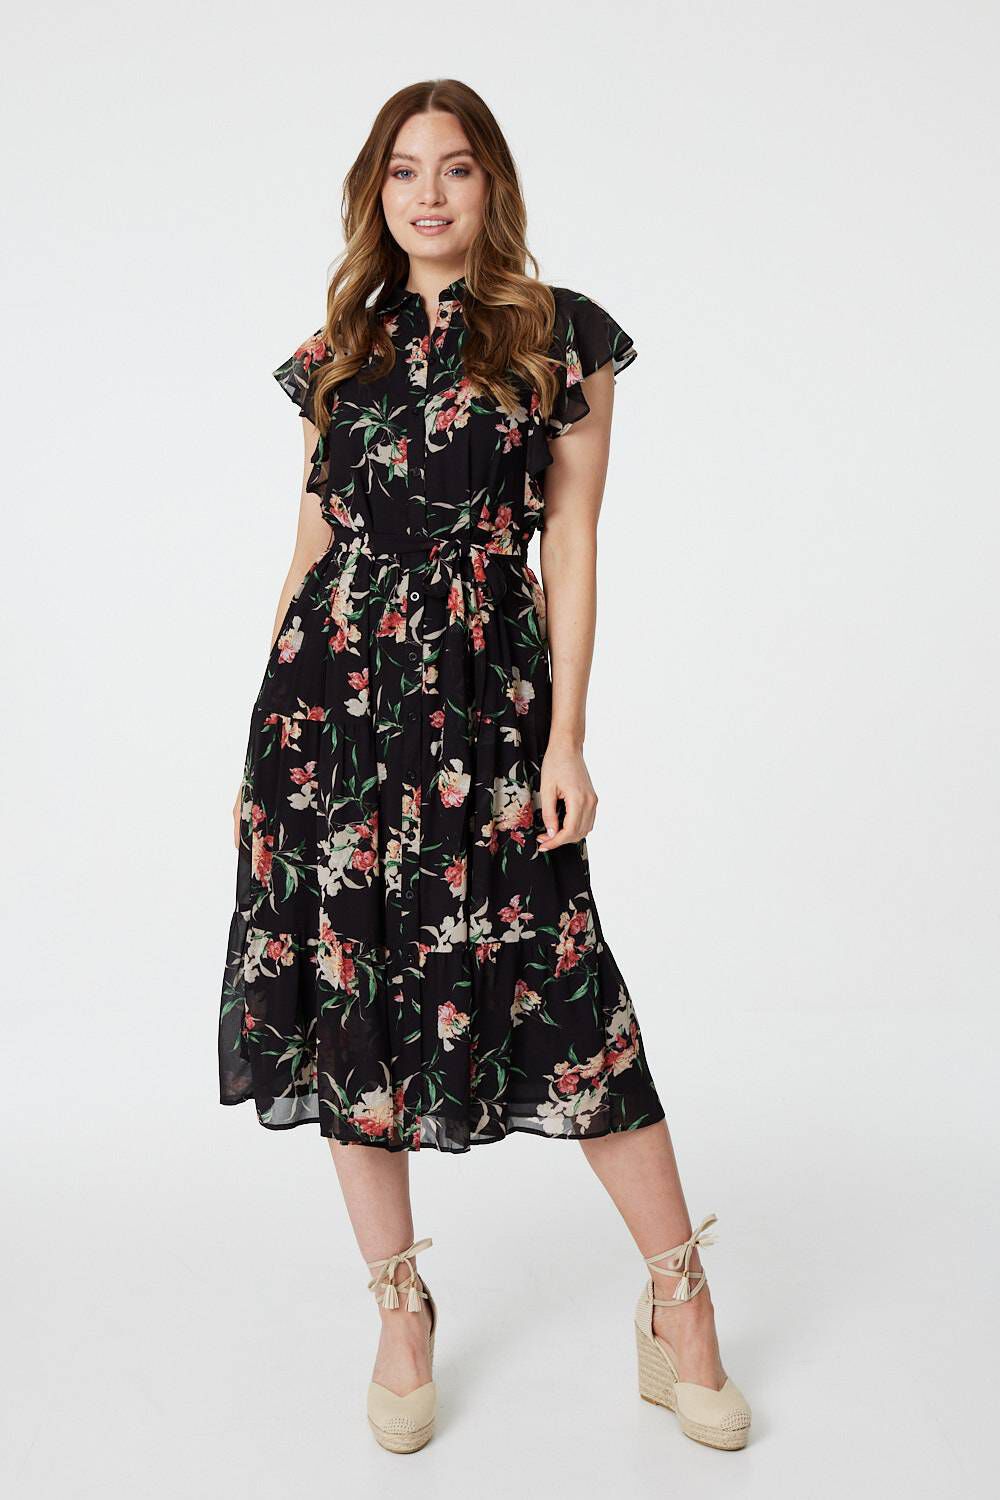 Izabel London Black - Floral Angel Sleeve Shirt Dress, Size: 10